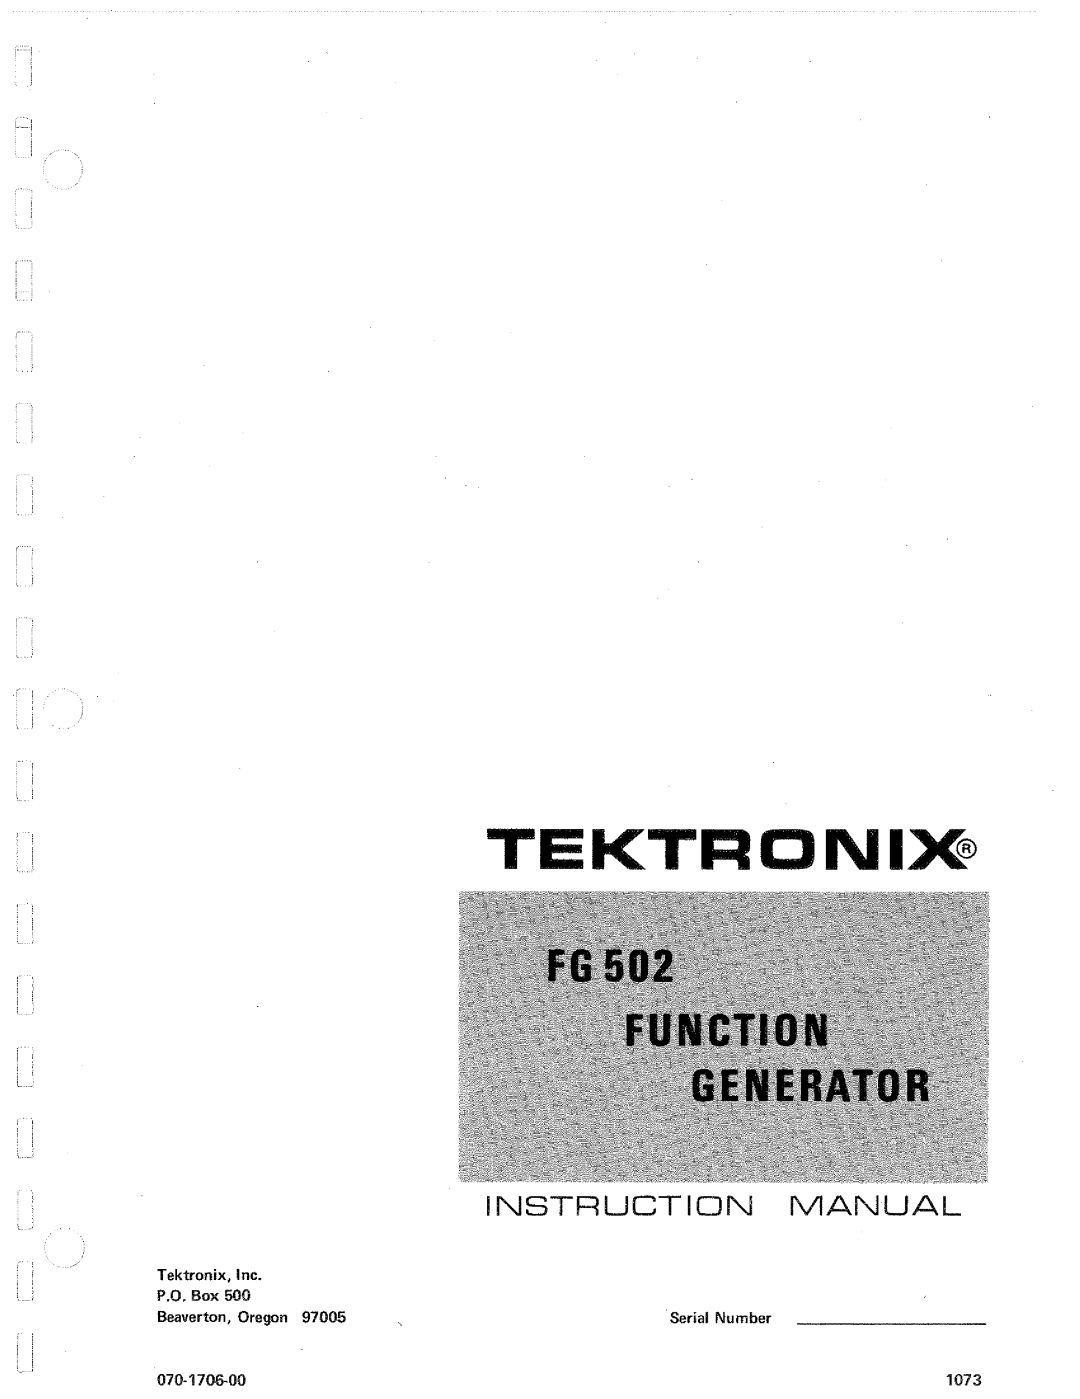 Tektronix FG502 manual 